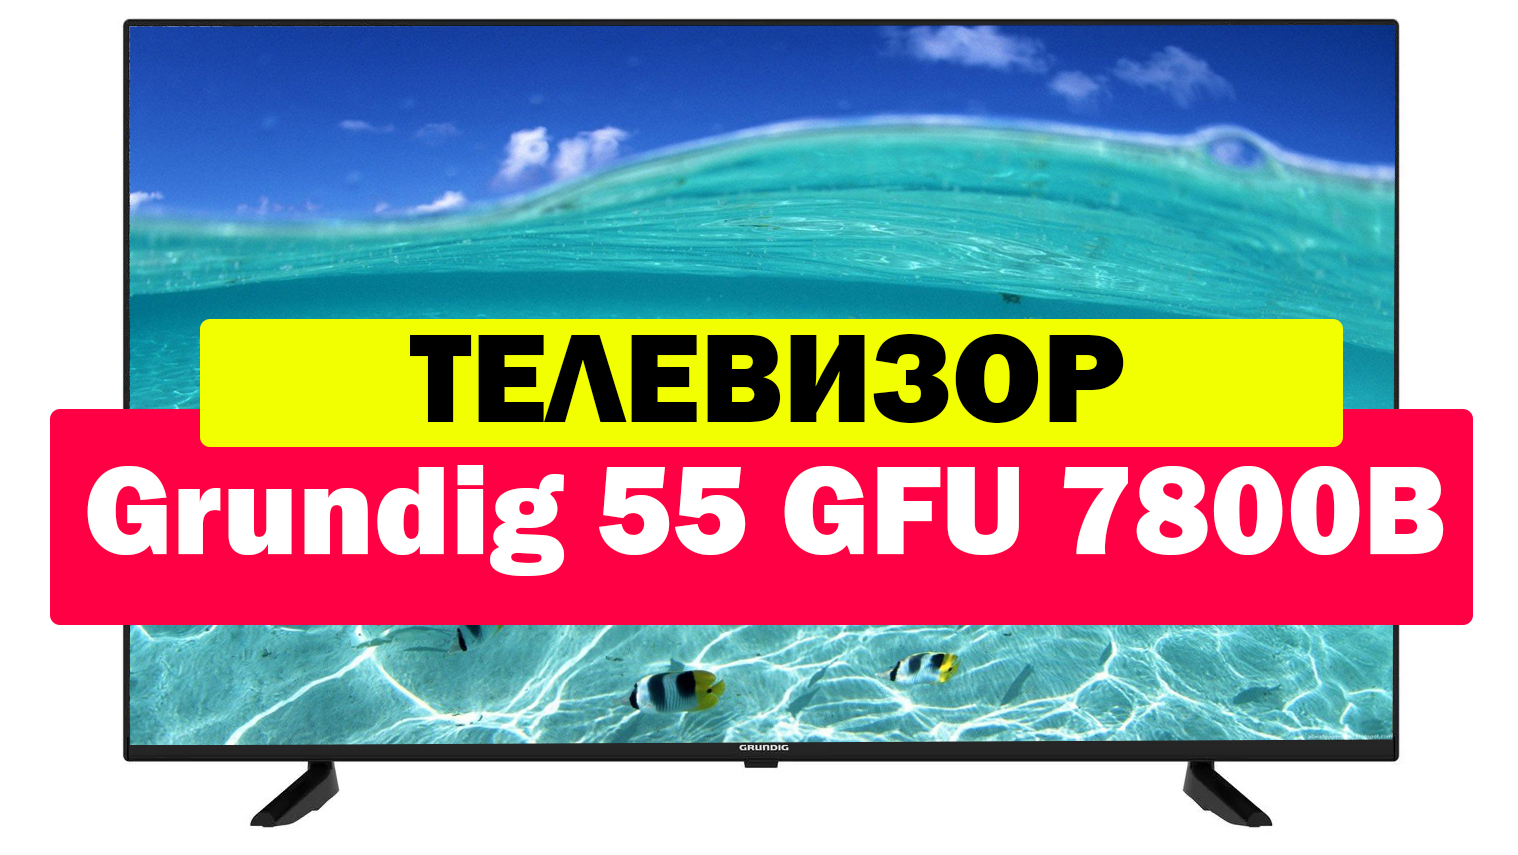 Телевизор grundig 55 ggu 7900b. Телевизор Grundig 55. Телевизор Grundig 55 GFU 7800. Телевизор Grundig 55 GFU 7800b отзывы. Телевизор Grundig 55 GFU 7800b обзор.